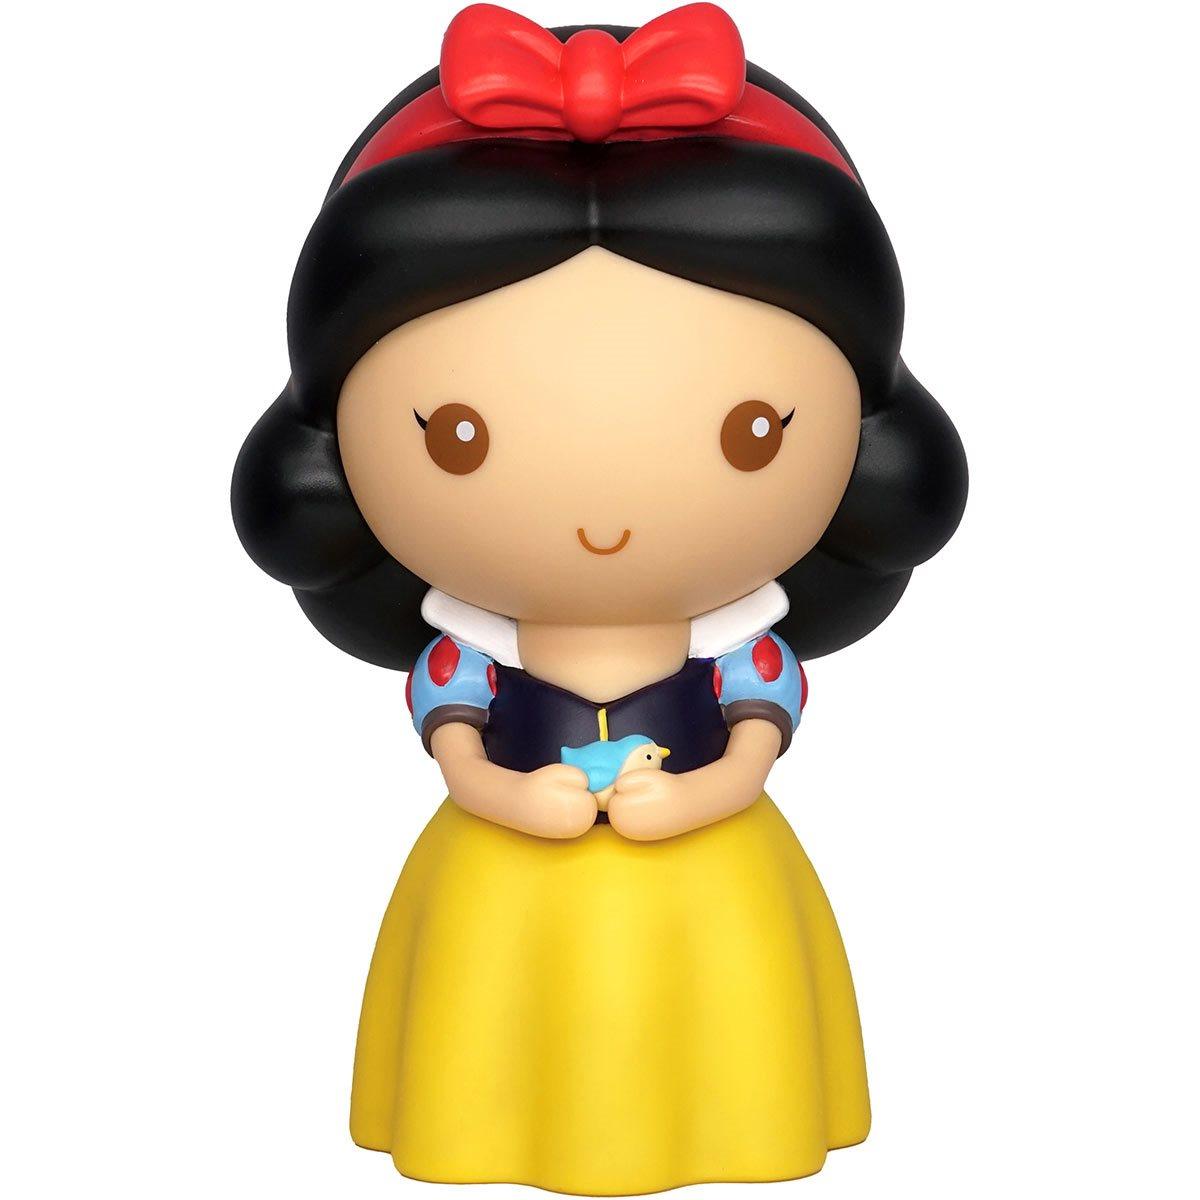 Disney Princess Snow White Figural Bank